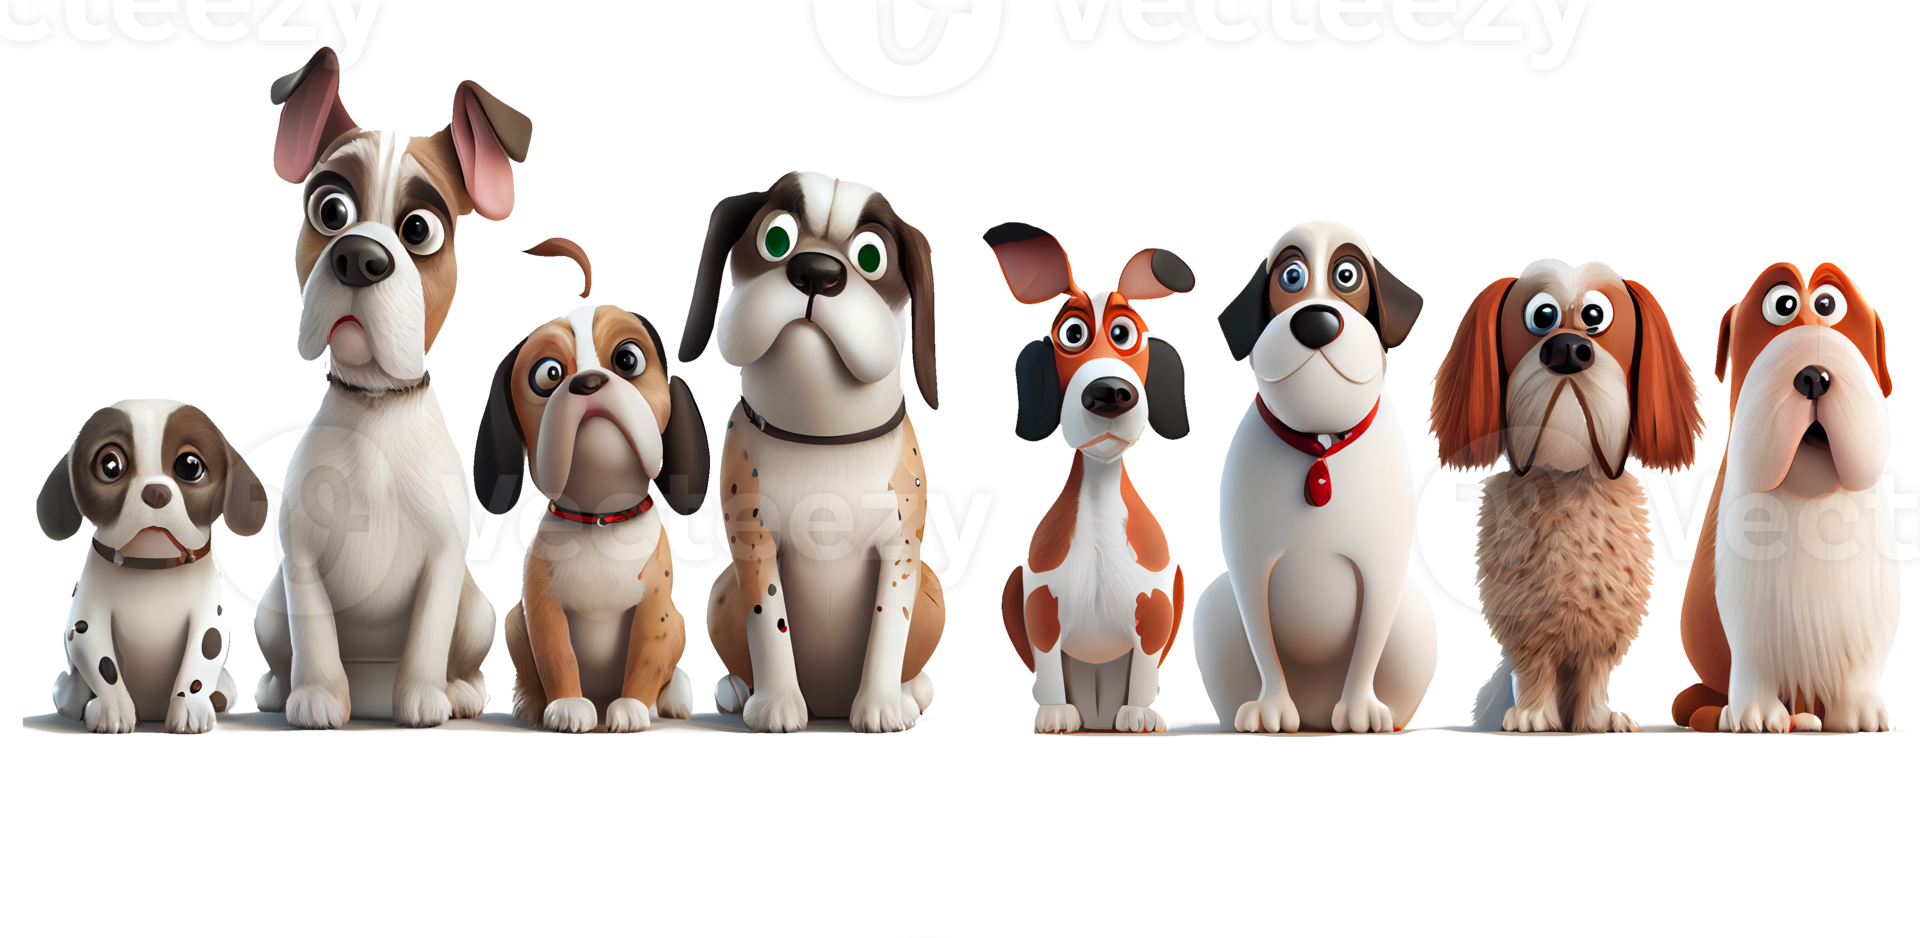 personajes de dibujos animados de perros lindos y felices png